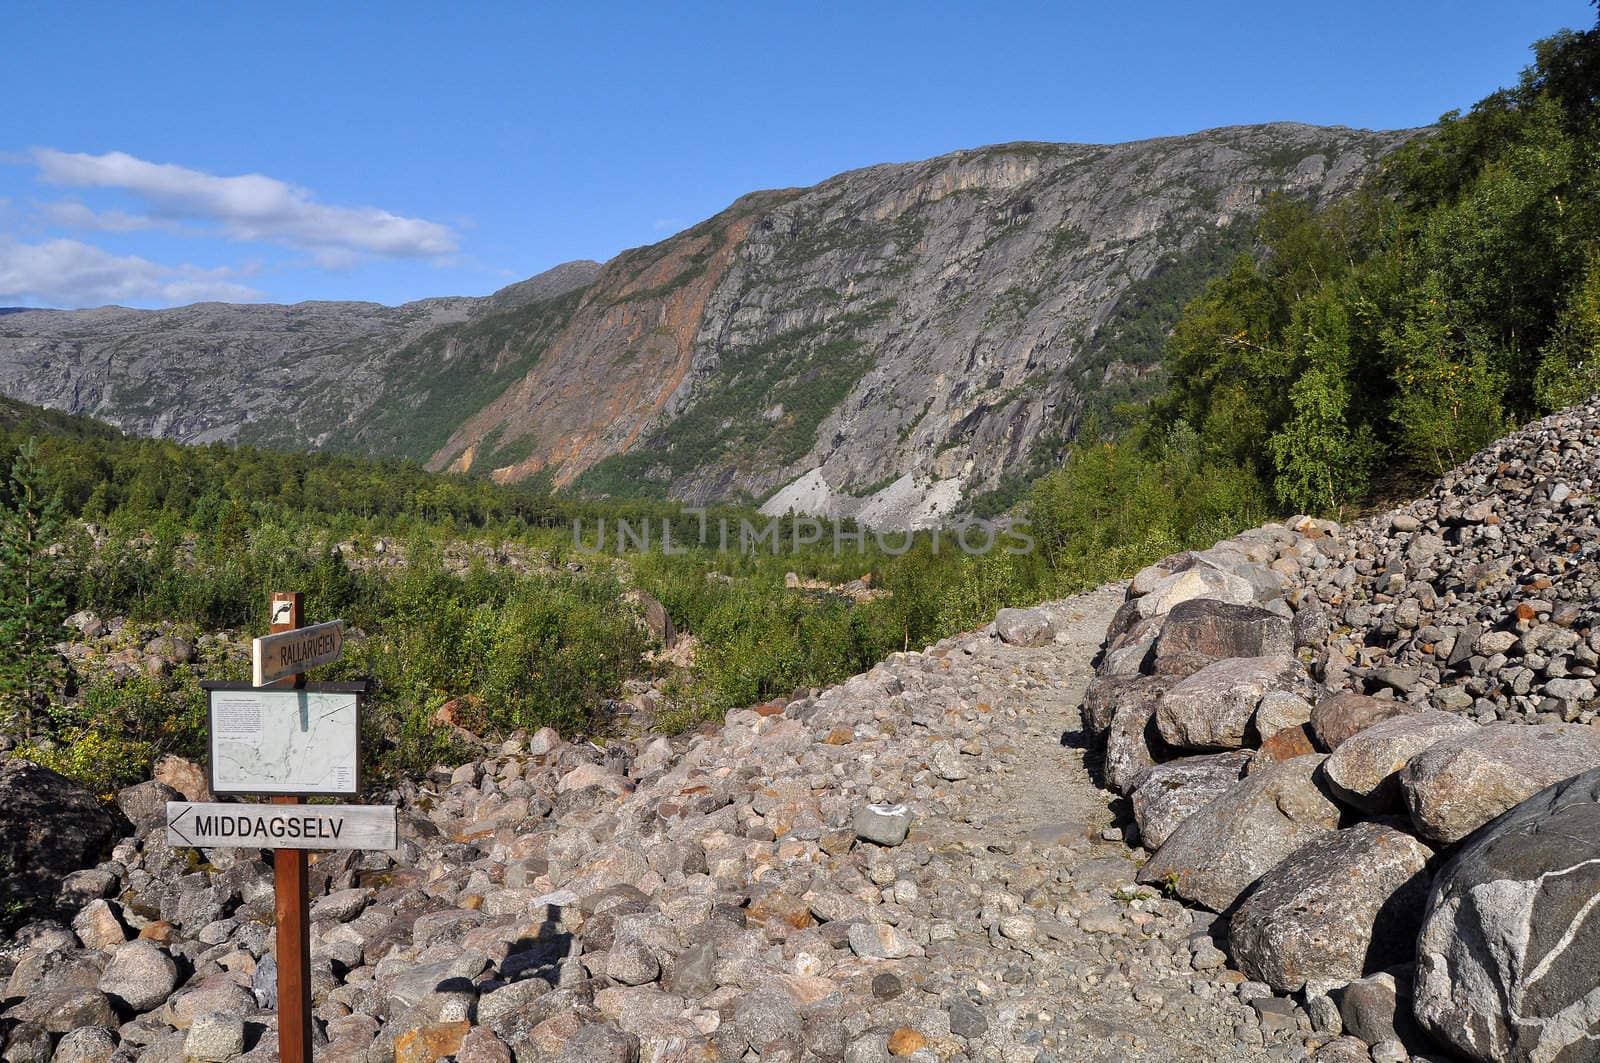 The walking trail "Rallarveien" in northern Norway.